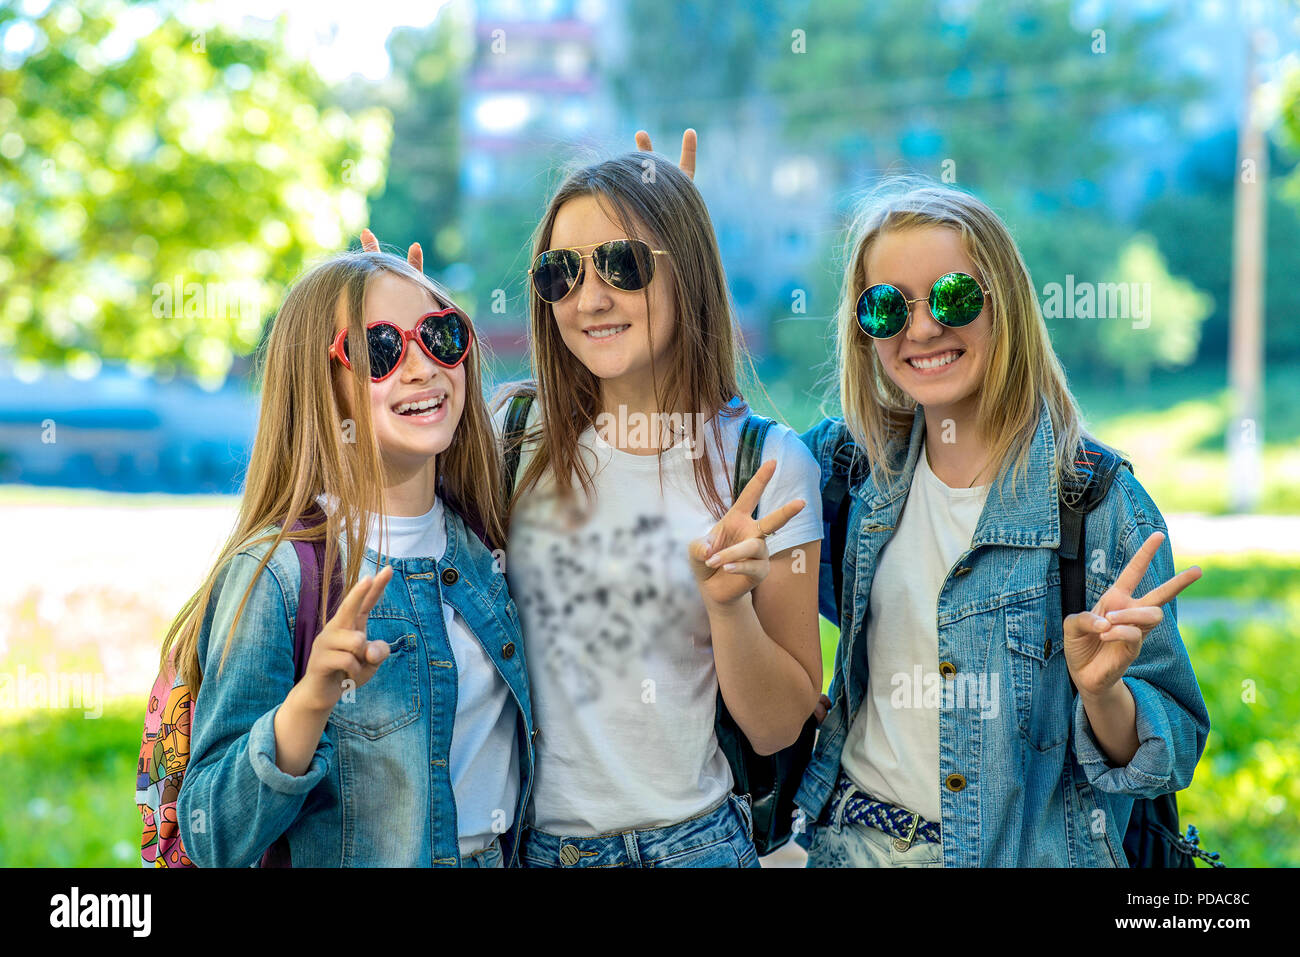 Trois filles adolescente écolière portant des jeans, vêtements et lunettes de soleil. Happy smiling avec geste de mains montrant Bonjour. Les émotions de bonheur et de détente. Le concept est meilleur amis d'école. Banque D'Images